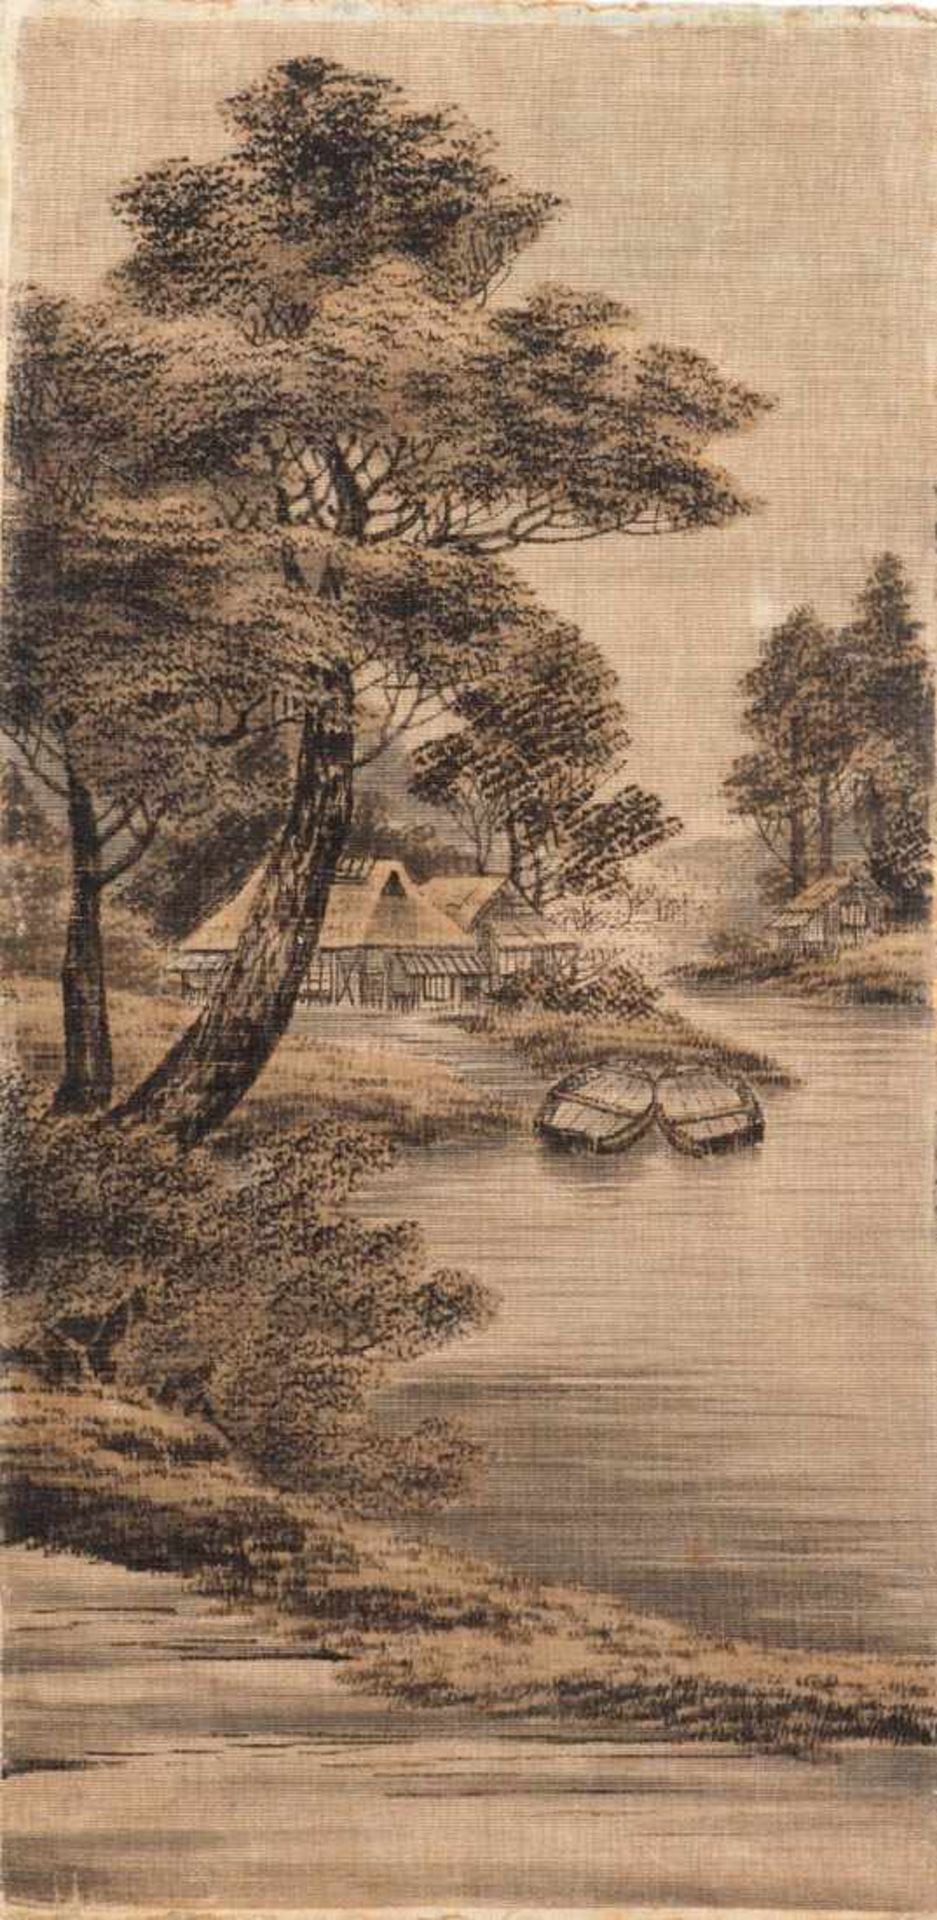 Webbild, um 1900 Japanische Landschaft mit Fluß, Häusern und Booten. Teilweise samtartige